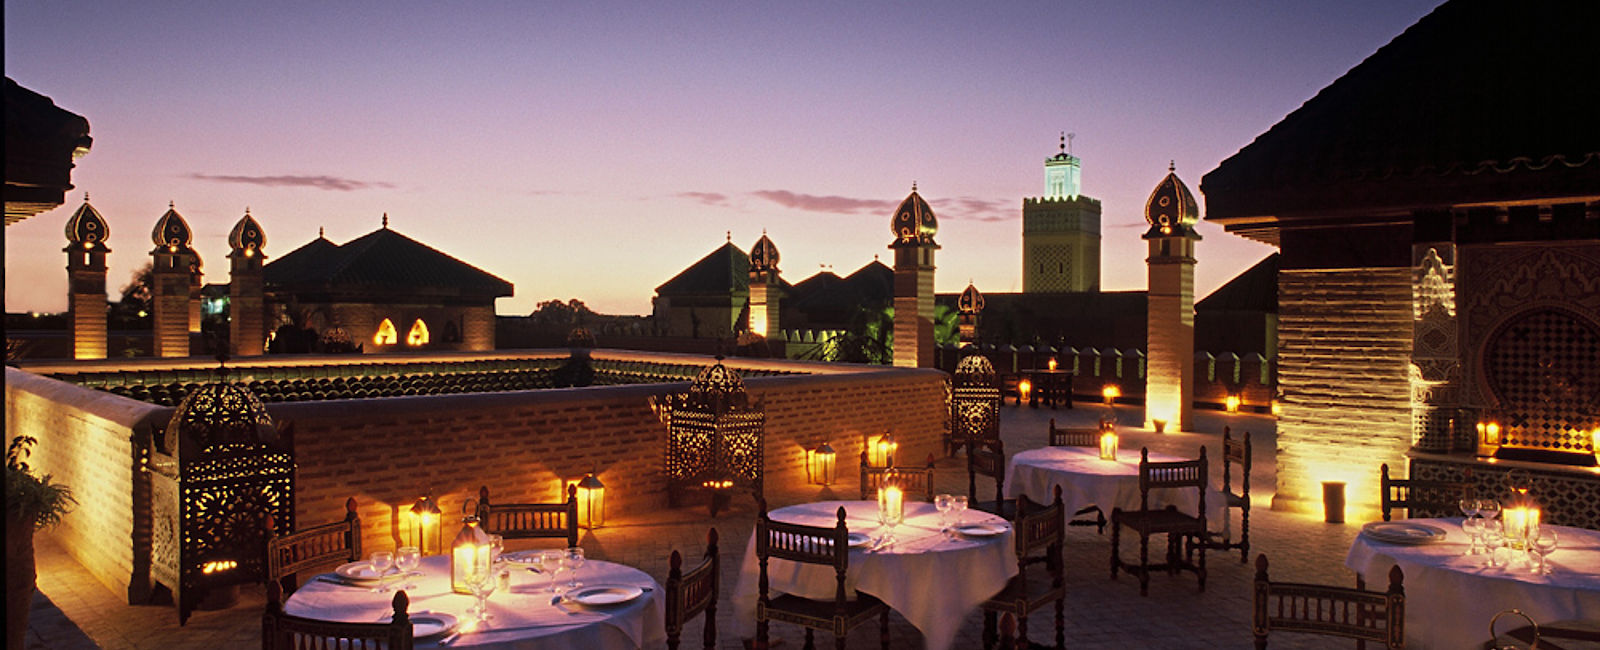 HOTELTEST
 La Sultana Marrakech 
 Ein Hotel - 5 verschiedene Welten 